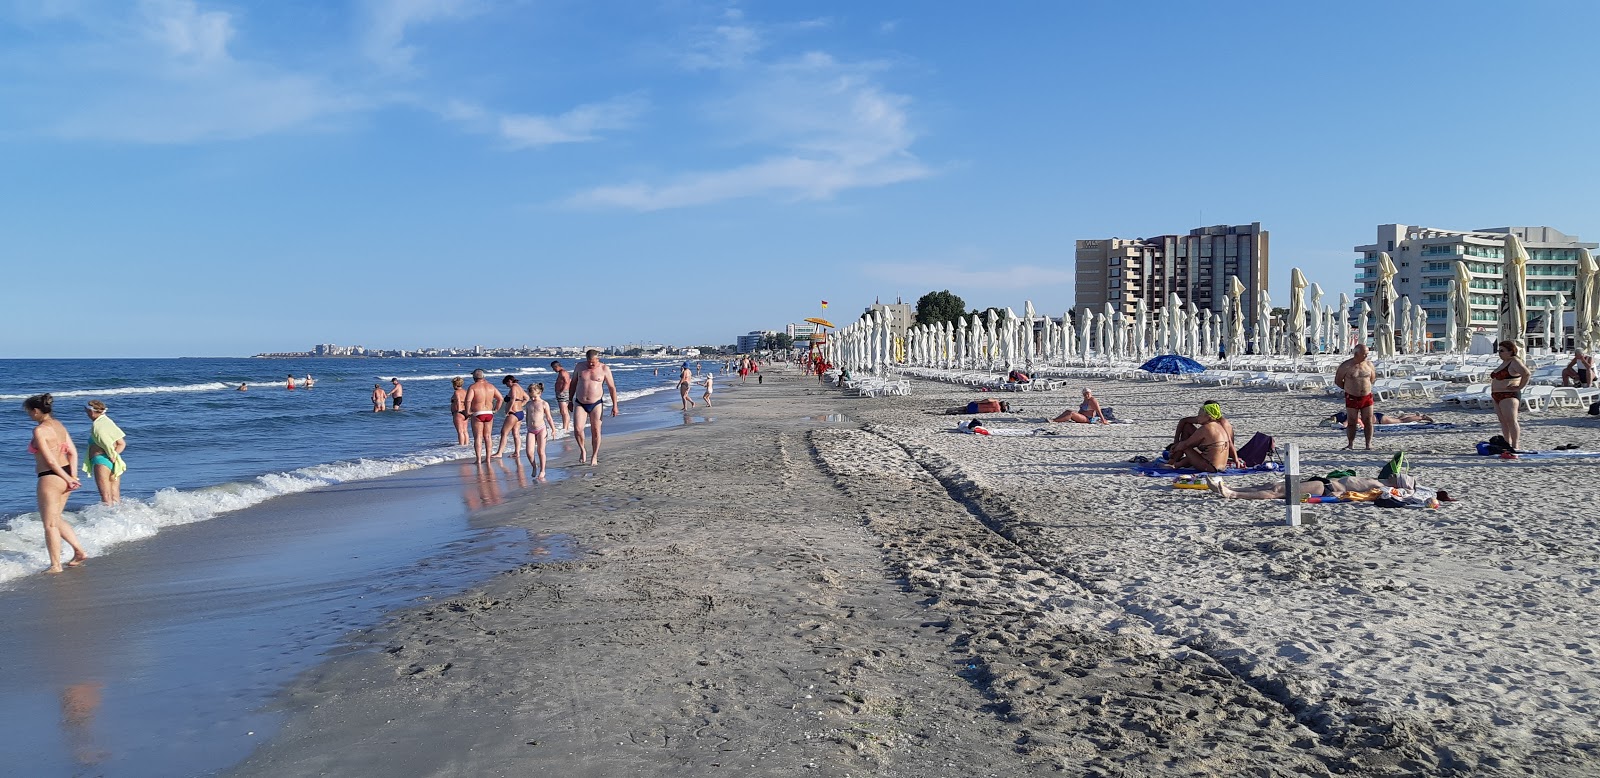 Fotografie cu Plaja Kudos cu o suprafață de nisip strălucitor